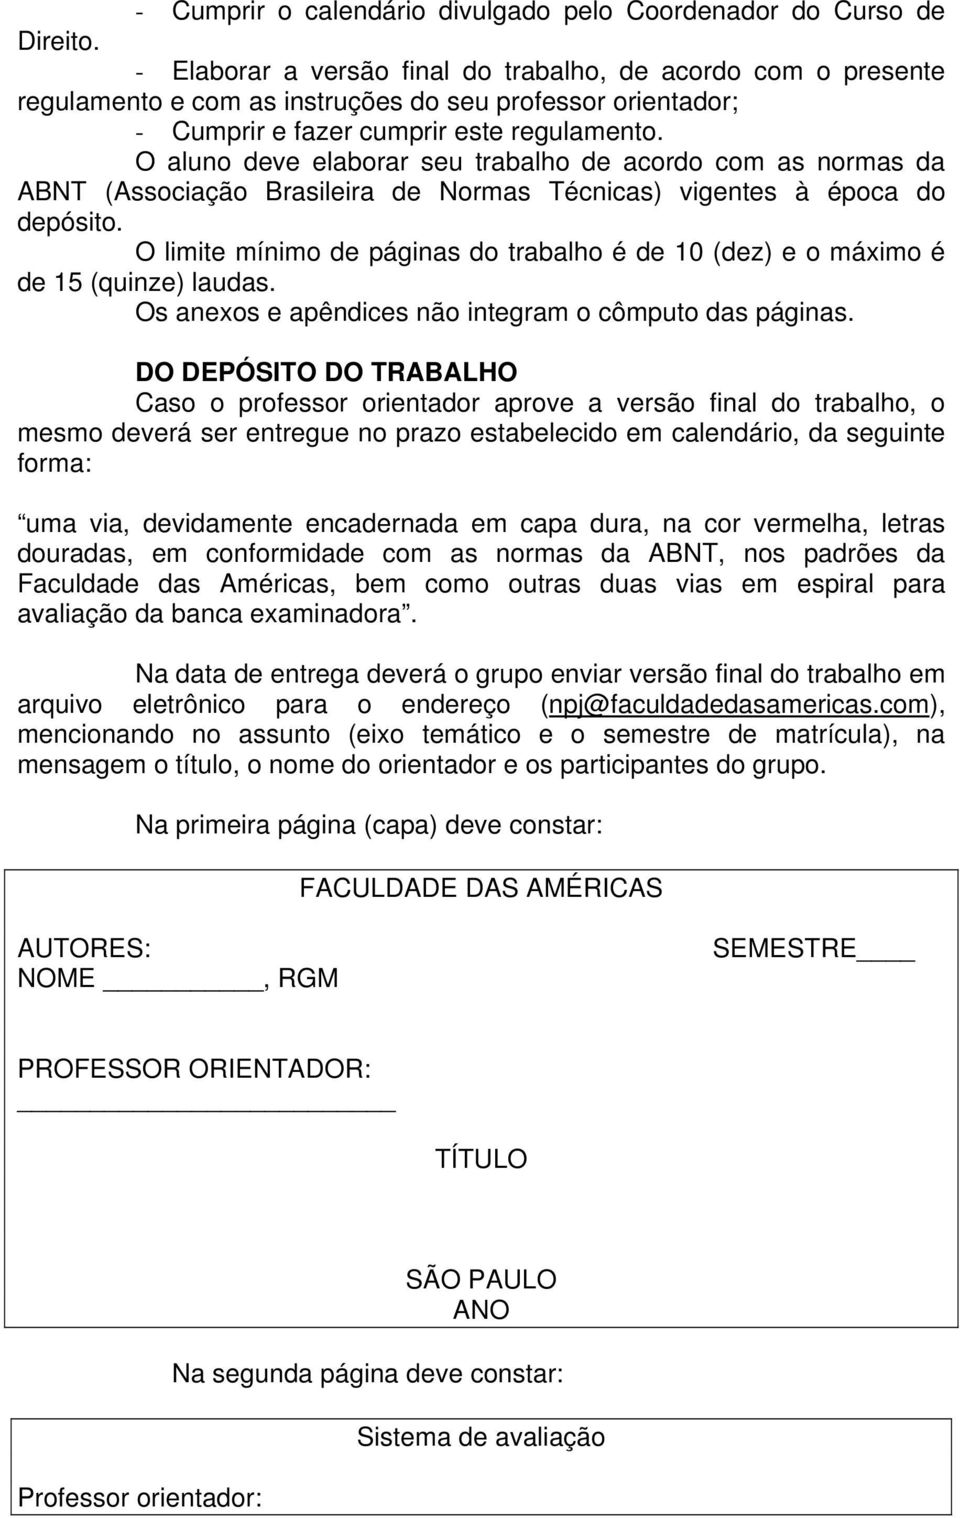 O aluno deve elaborar seu trabalho de acordo com as normas da ABNT (Associação Brasileira de Normas Técnicas) vigentes à época do depósito.